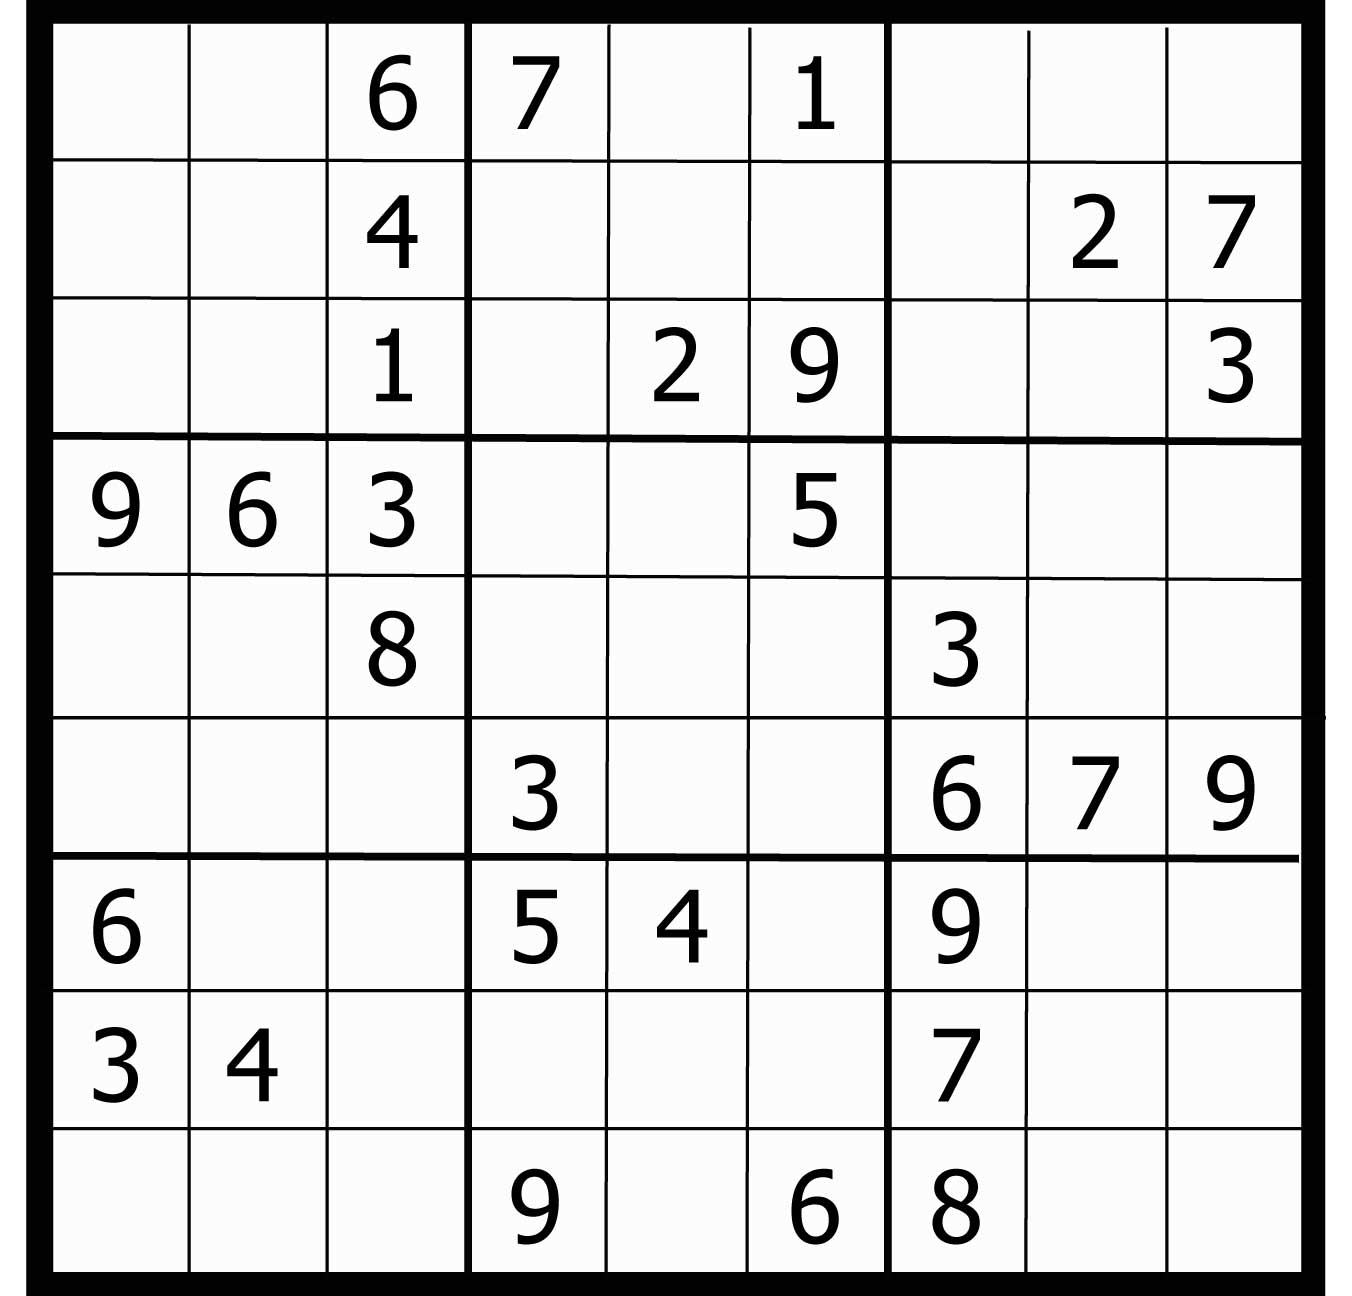 Jouer Sudoku Gratuit En Ligne destiné Comment Jouer Sudoku